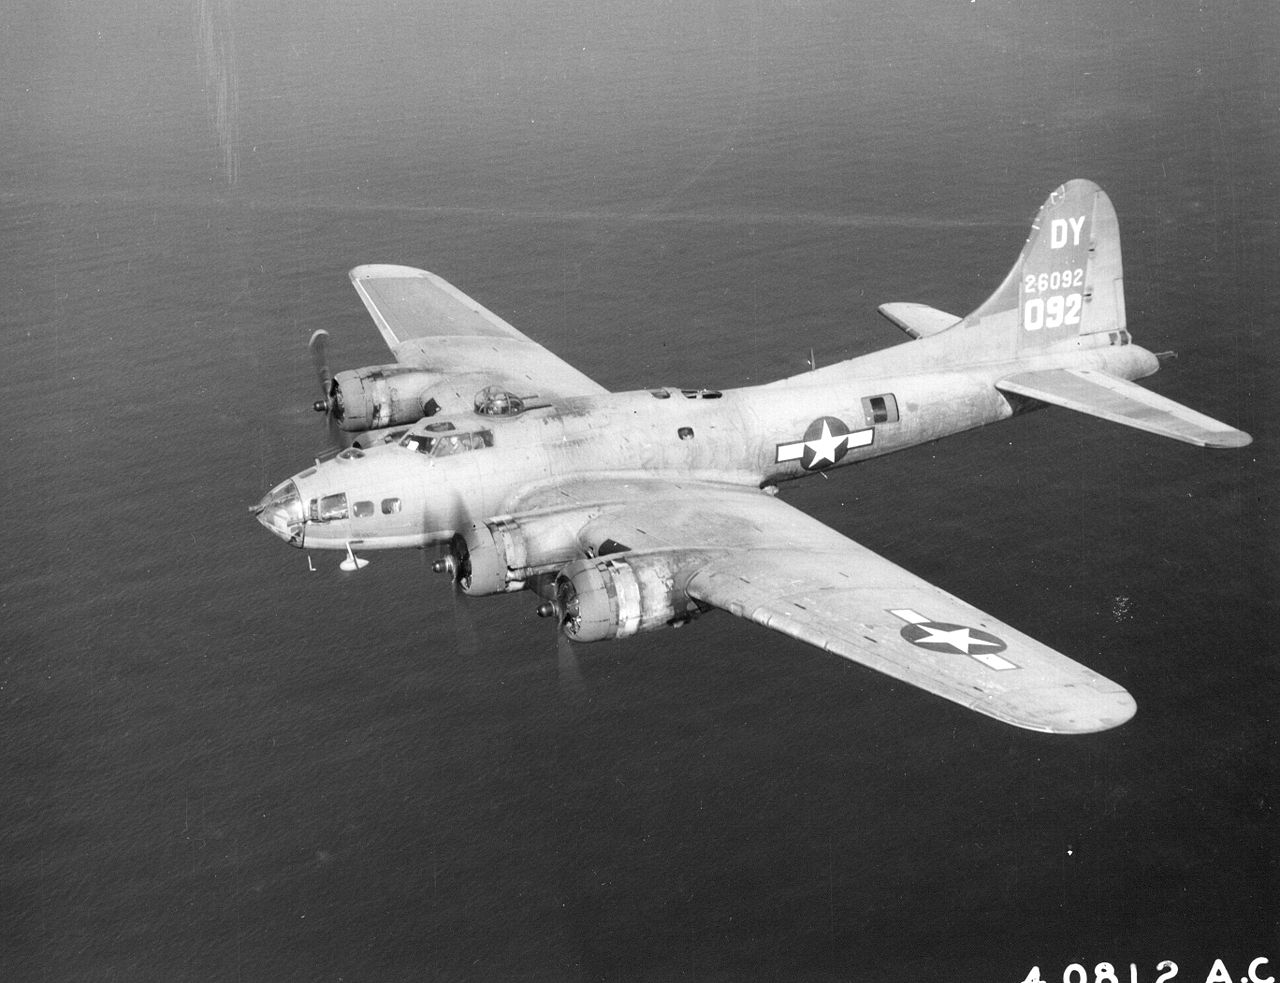 B-17 42-6092